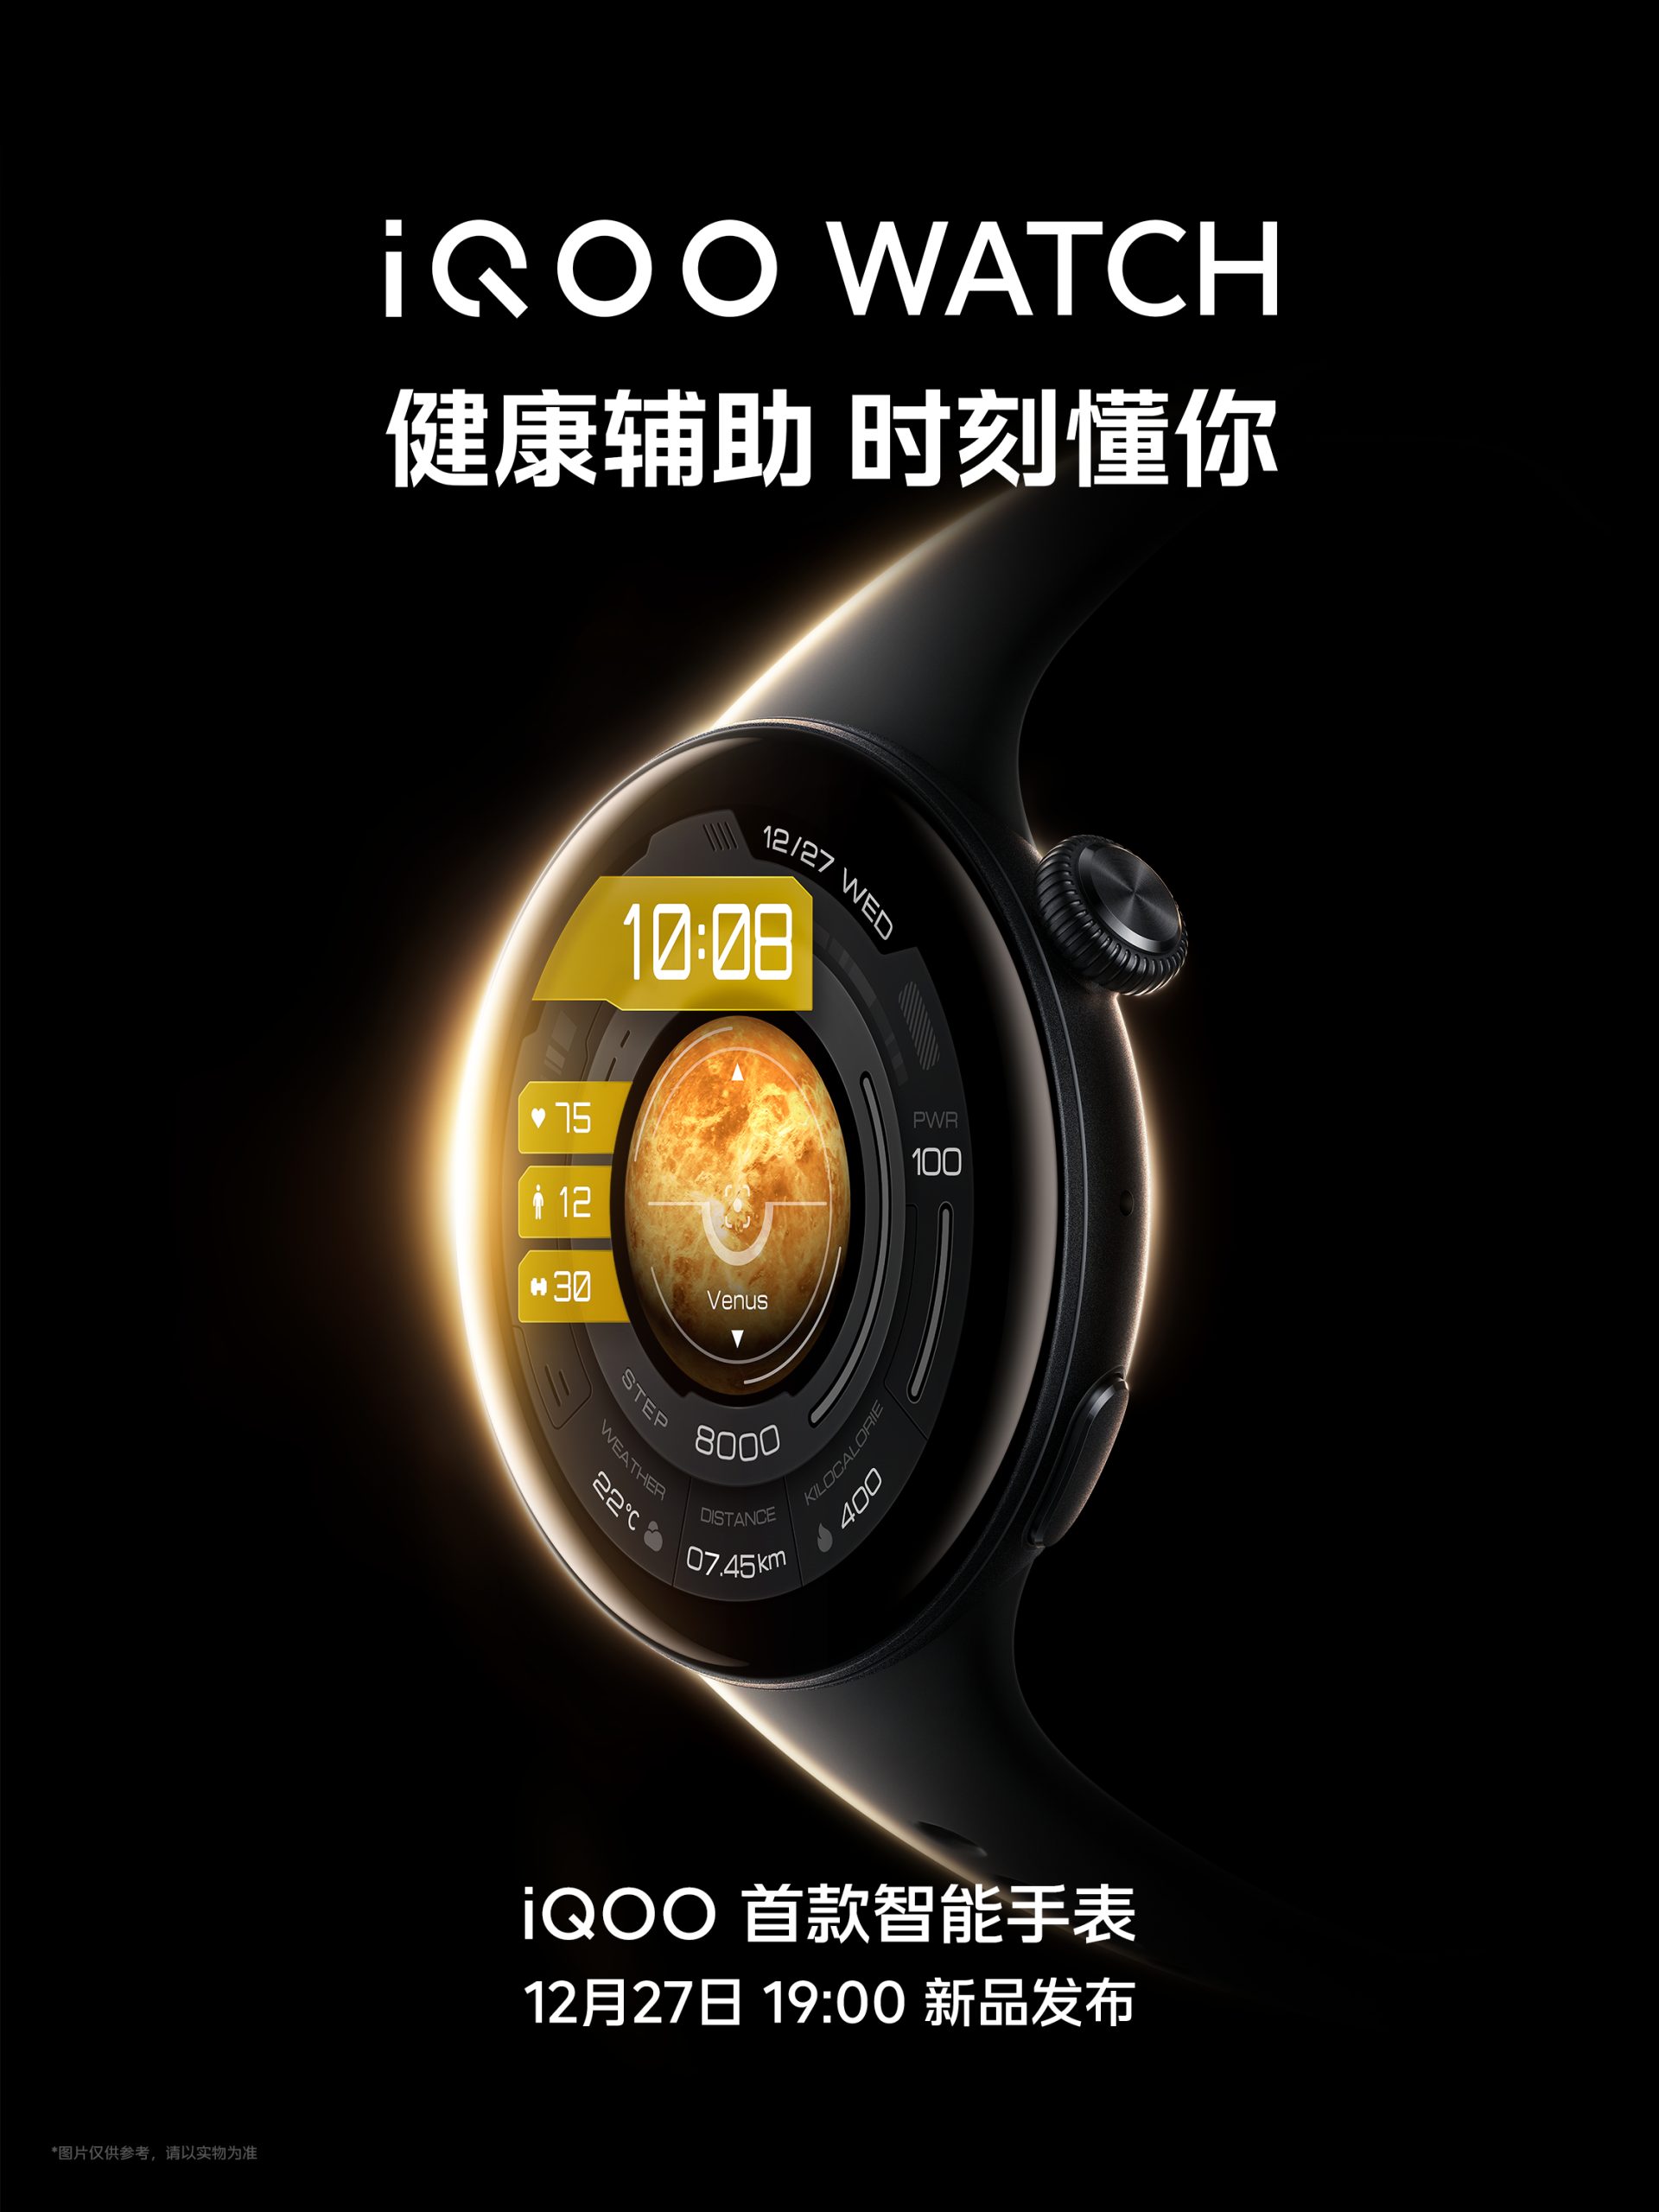 Годинники iQOO Watch, iQOO TWS 1e будуть представлені в Китаї 27 грудня